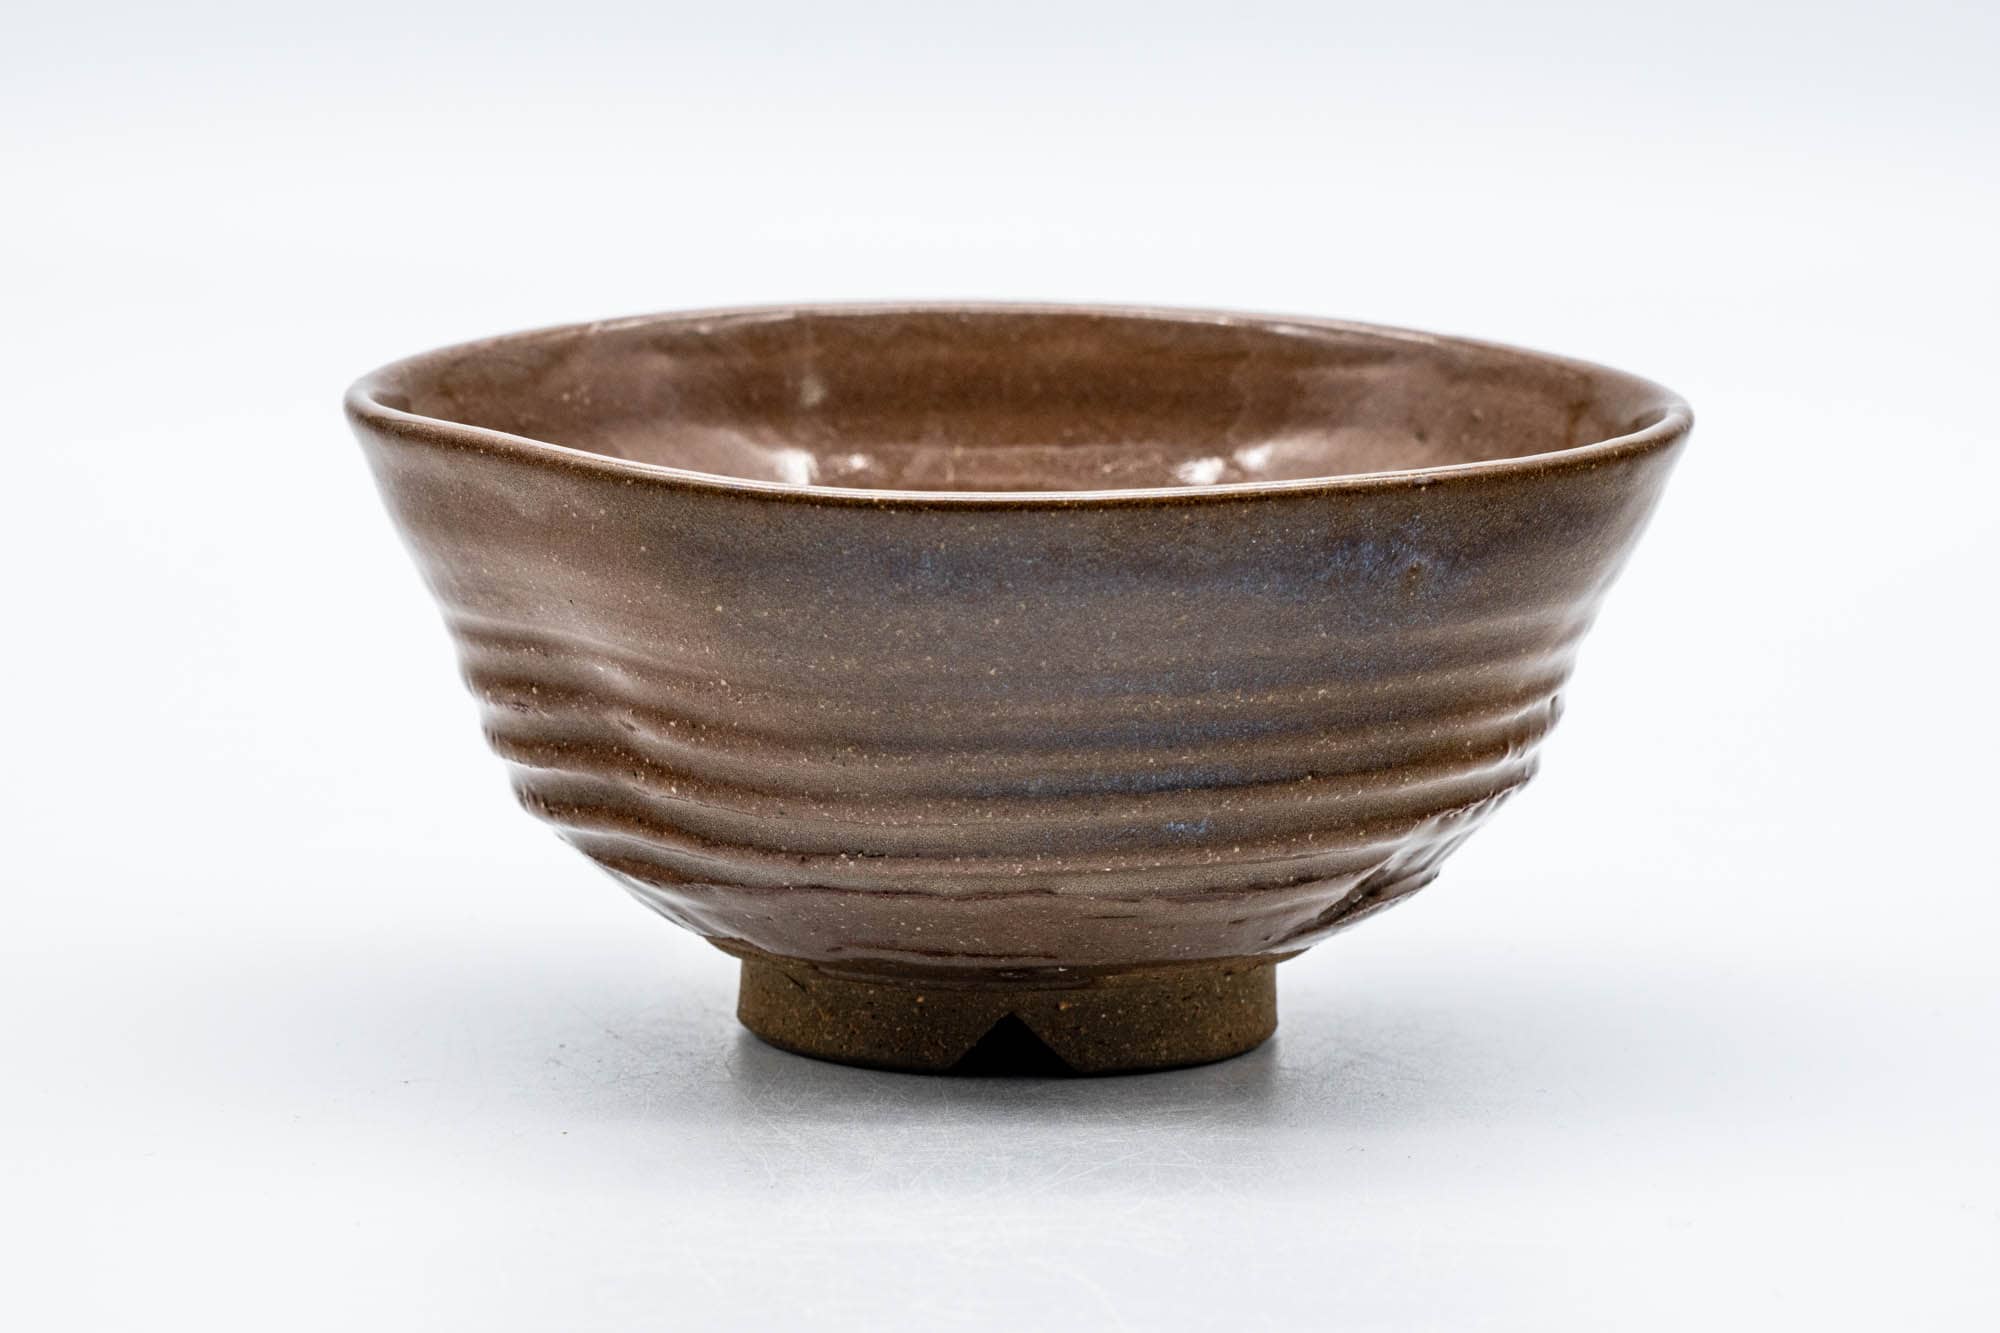 Japanese Matcha Bowl - Brown Glazed Thumb-Indented Ribbed Chawan - 150ml